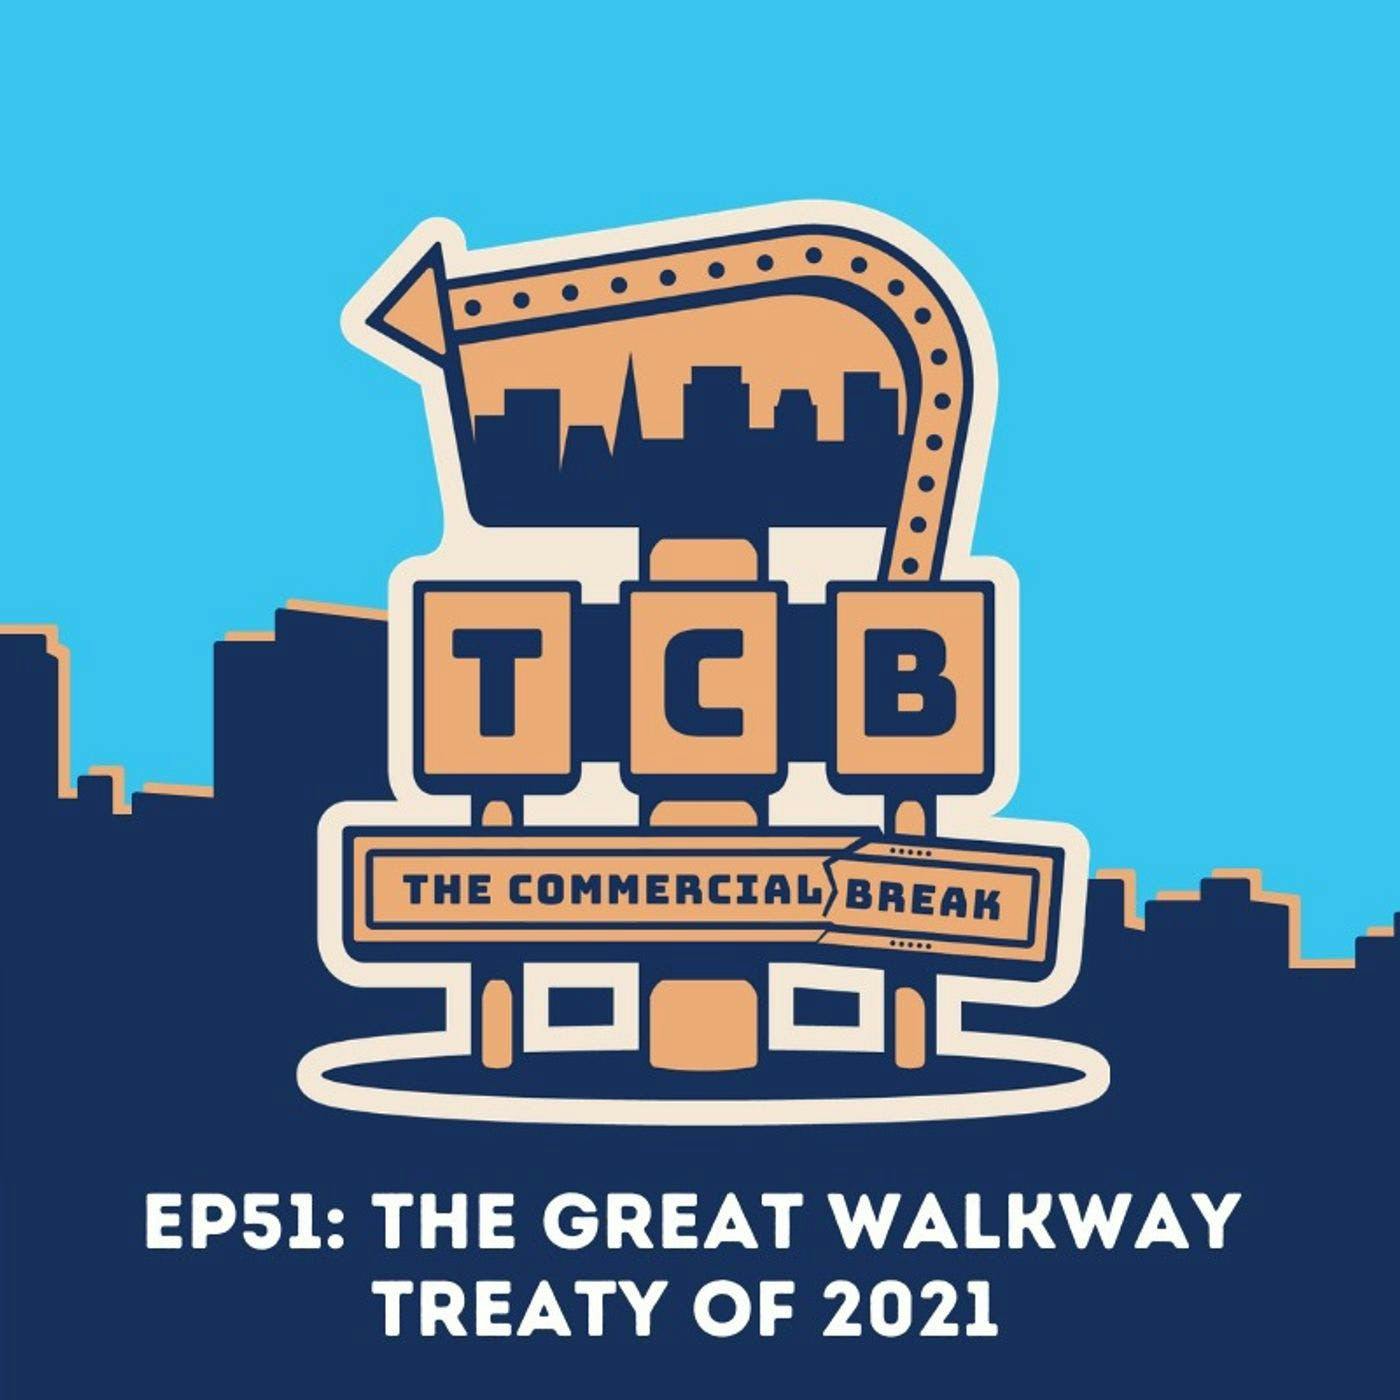 The Great Walkway Treaty of 2021